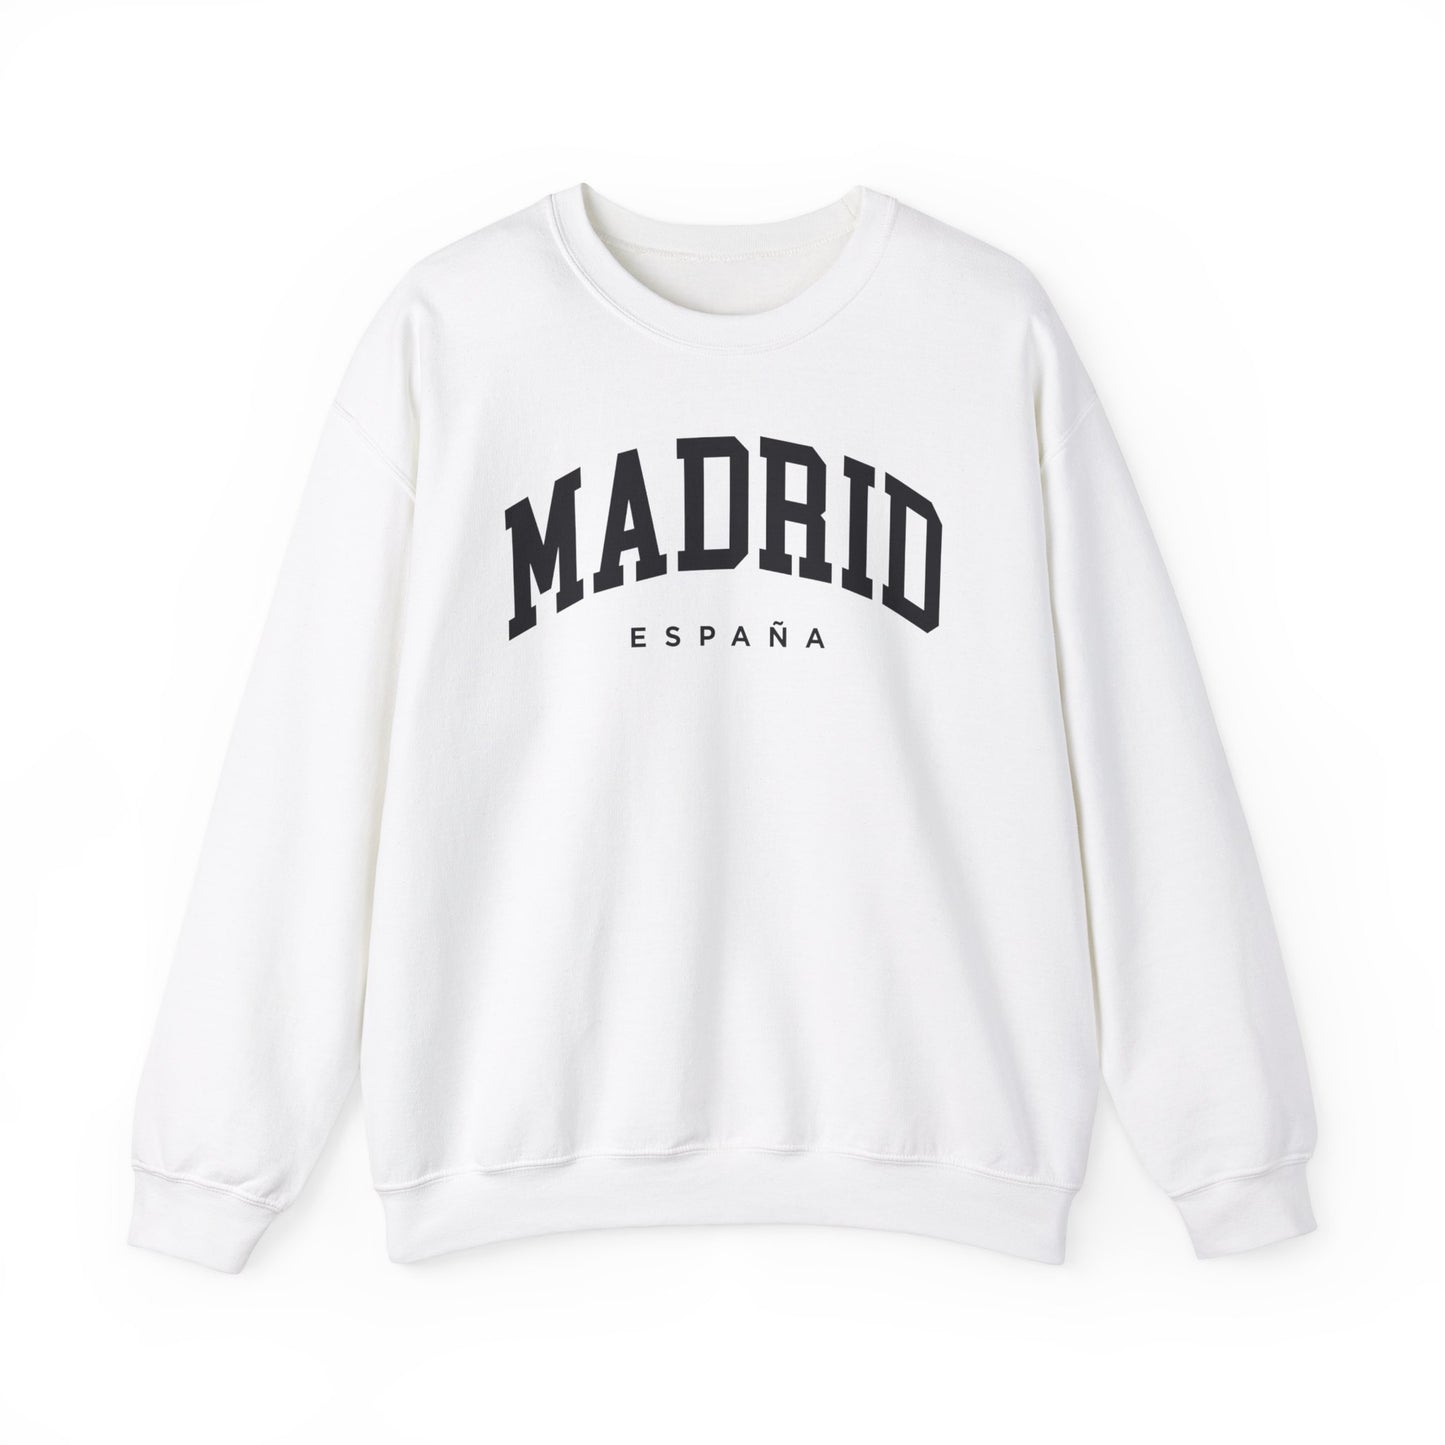 Madrid Spain Sweatshirt